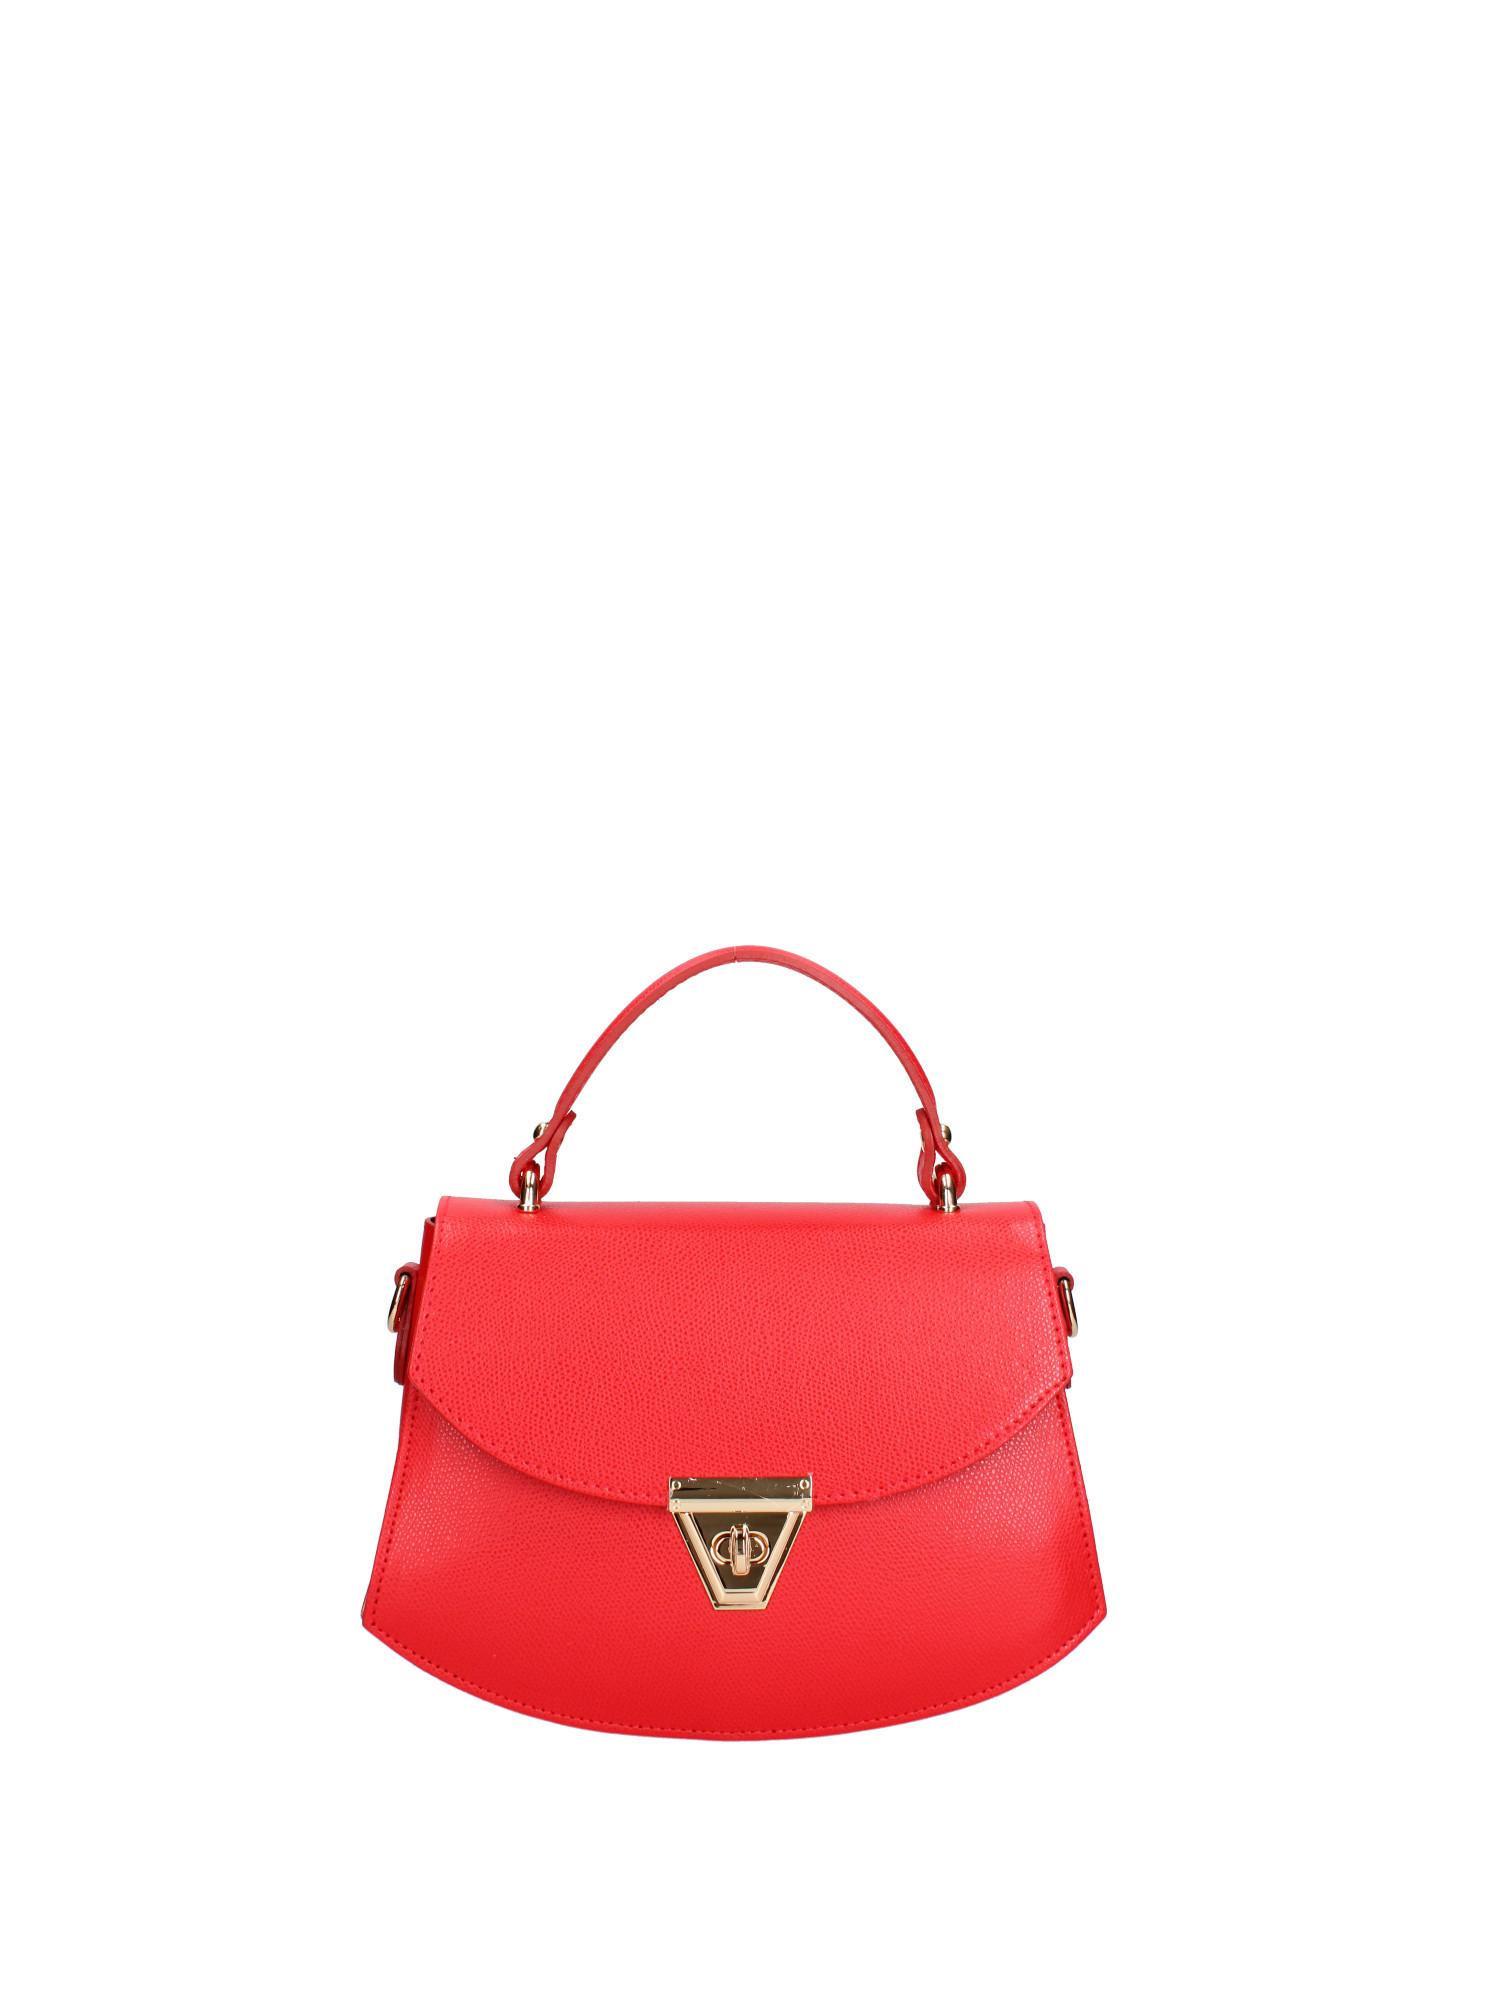 Handtasche Damen Rot Bunt ONE SIZE von Roberta Rossi